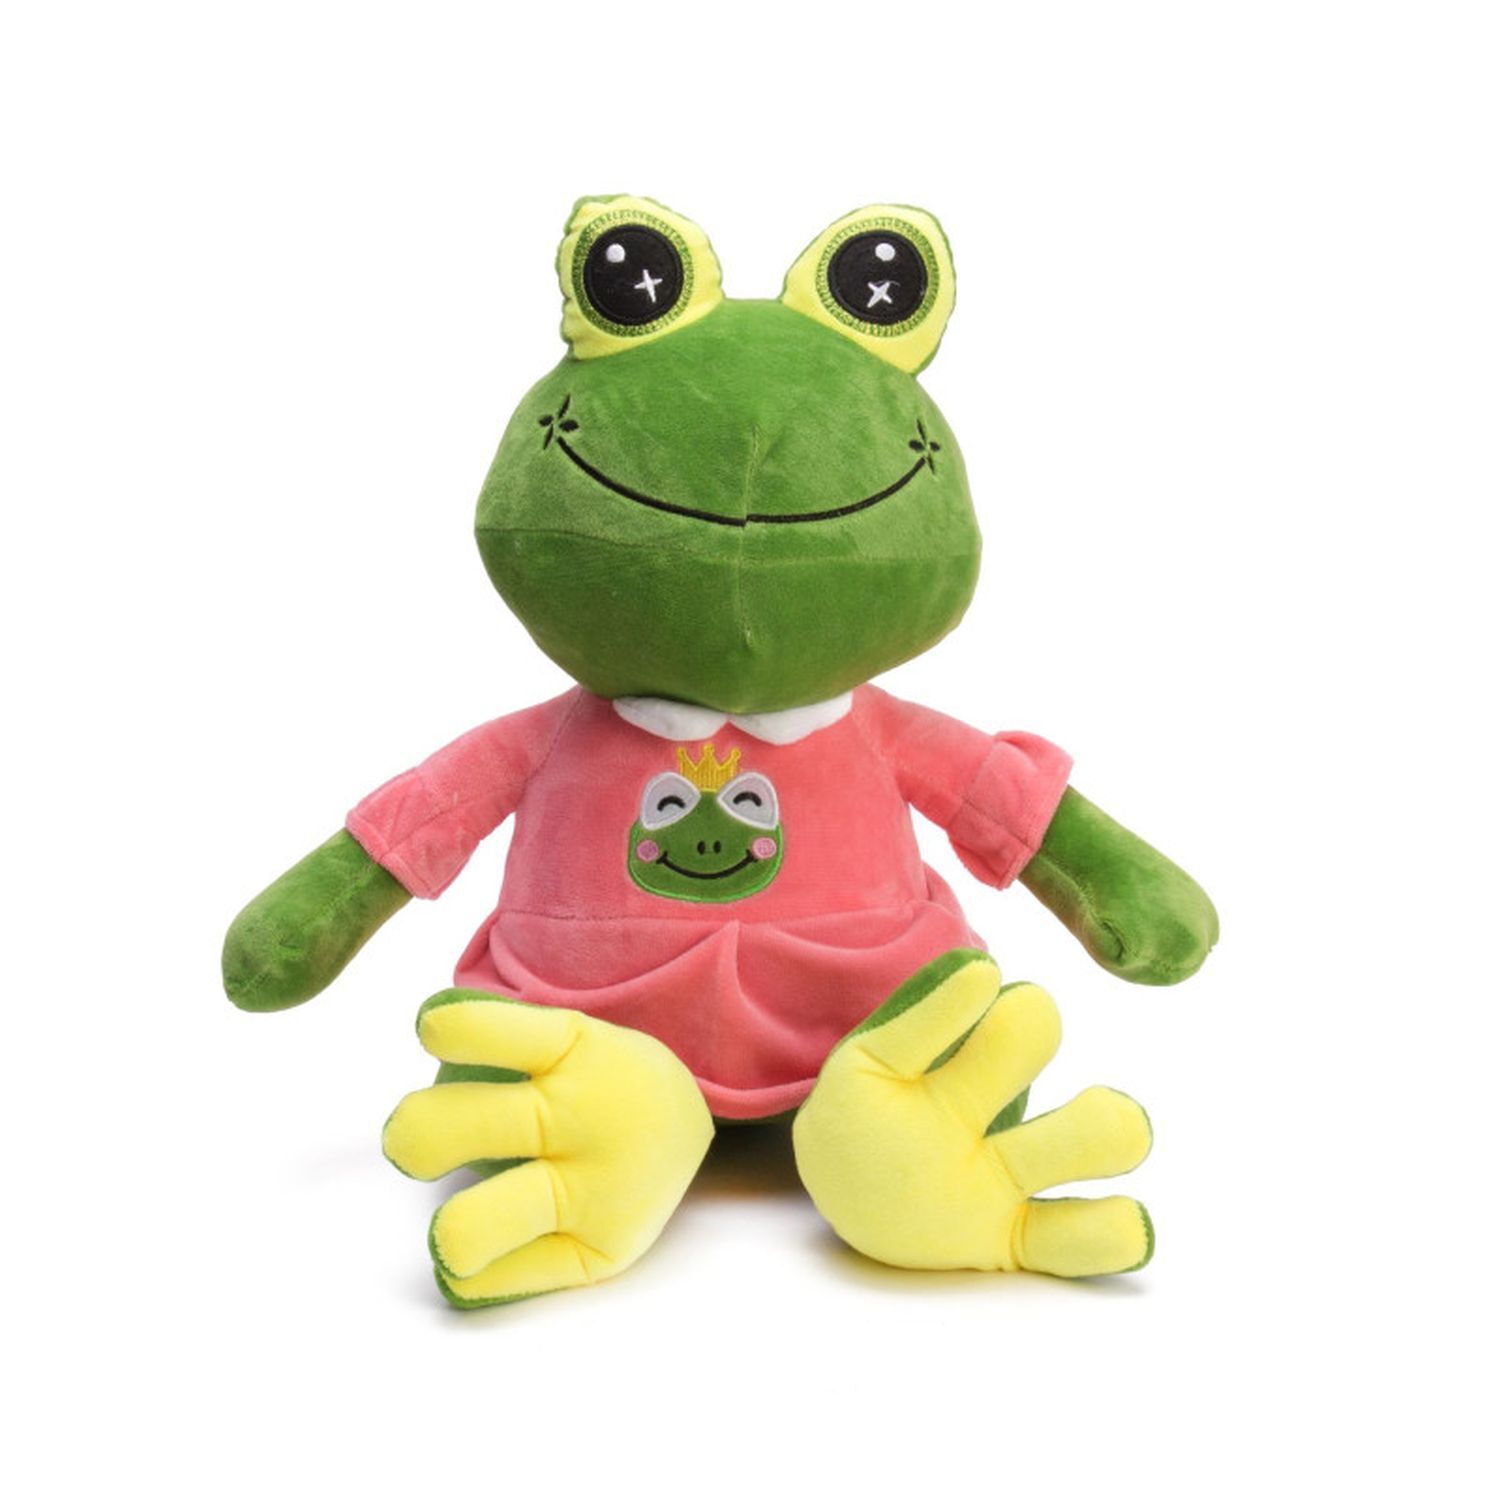 Игрушка лягушка. Мягкая игрушка лягушка King 25см (розовый). Мягкая игрушка лягушка dl104002012p. Игрушка Лягушонок Томато. Игрушка лягушка Томато мягкая.